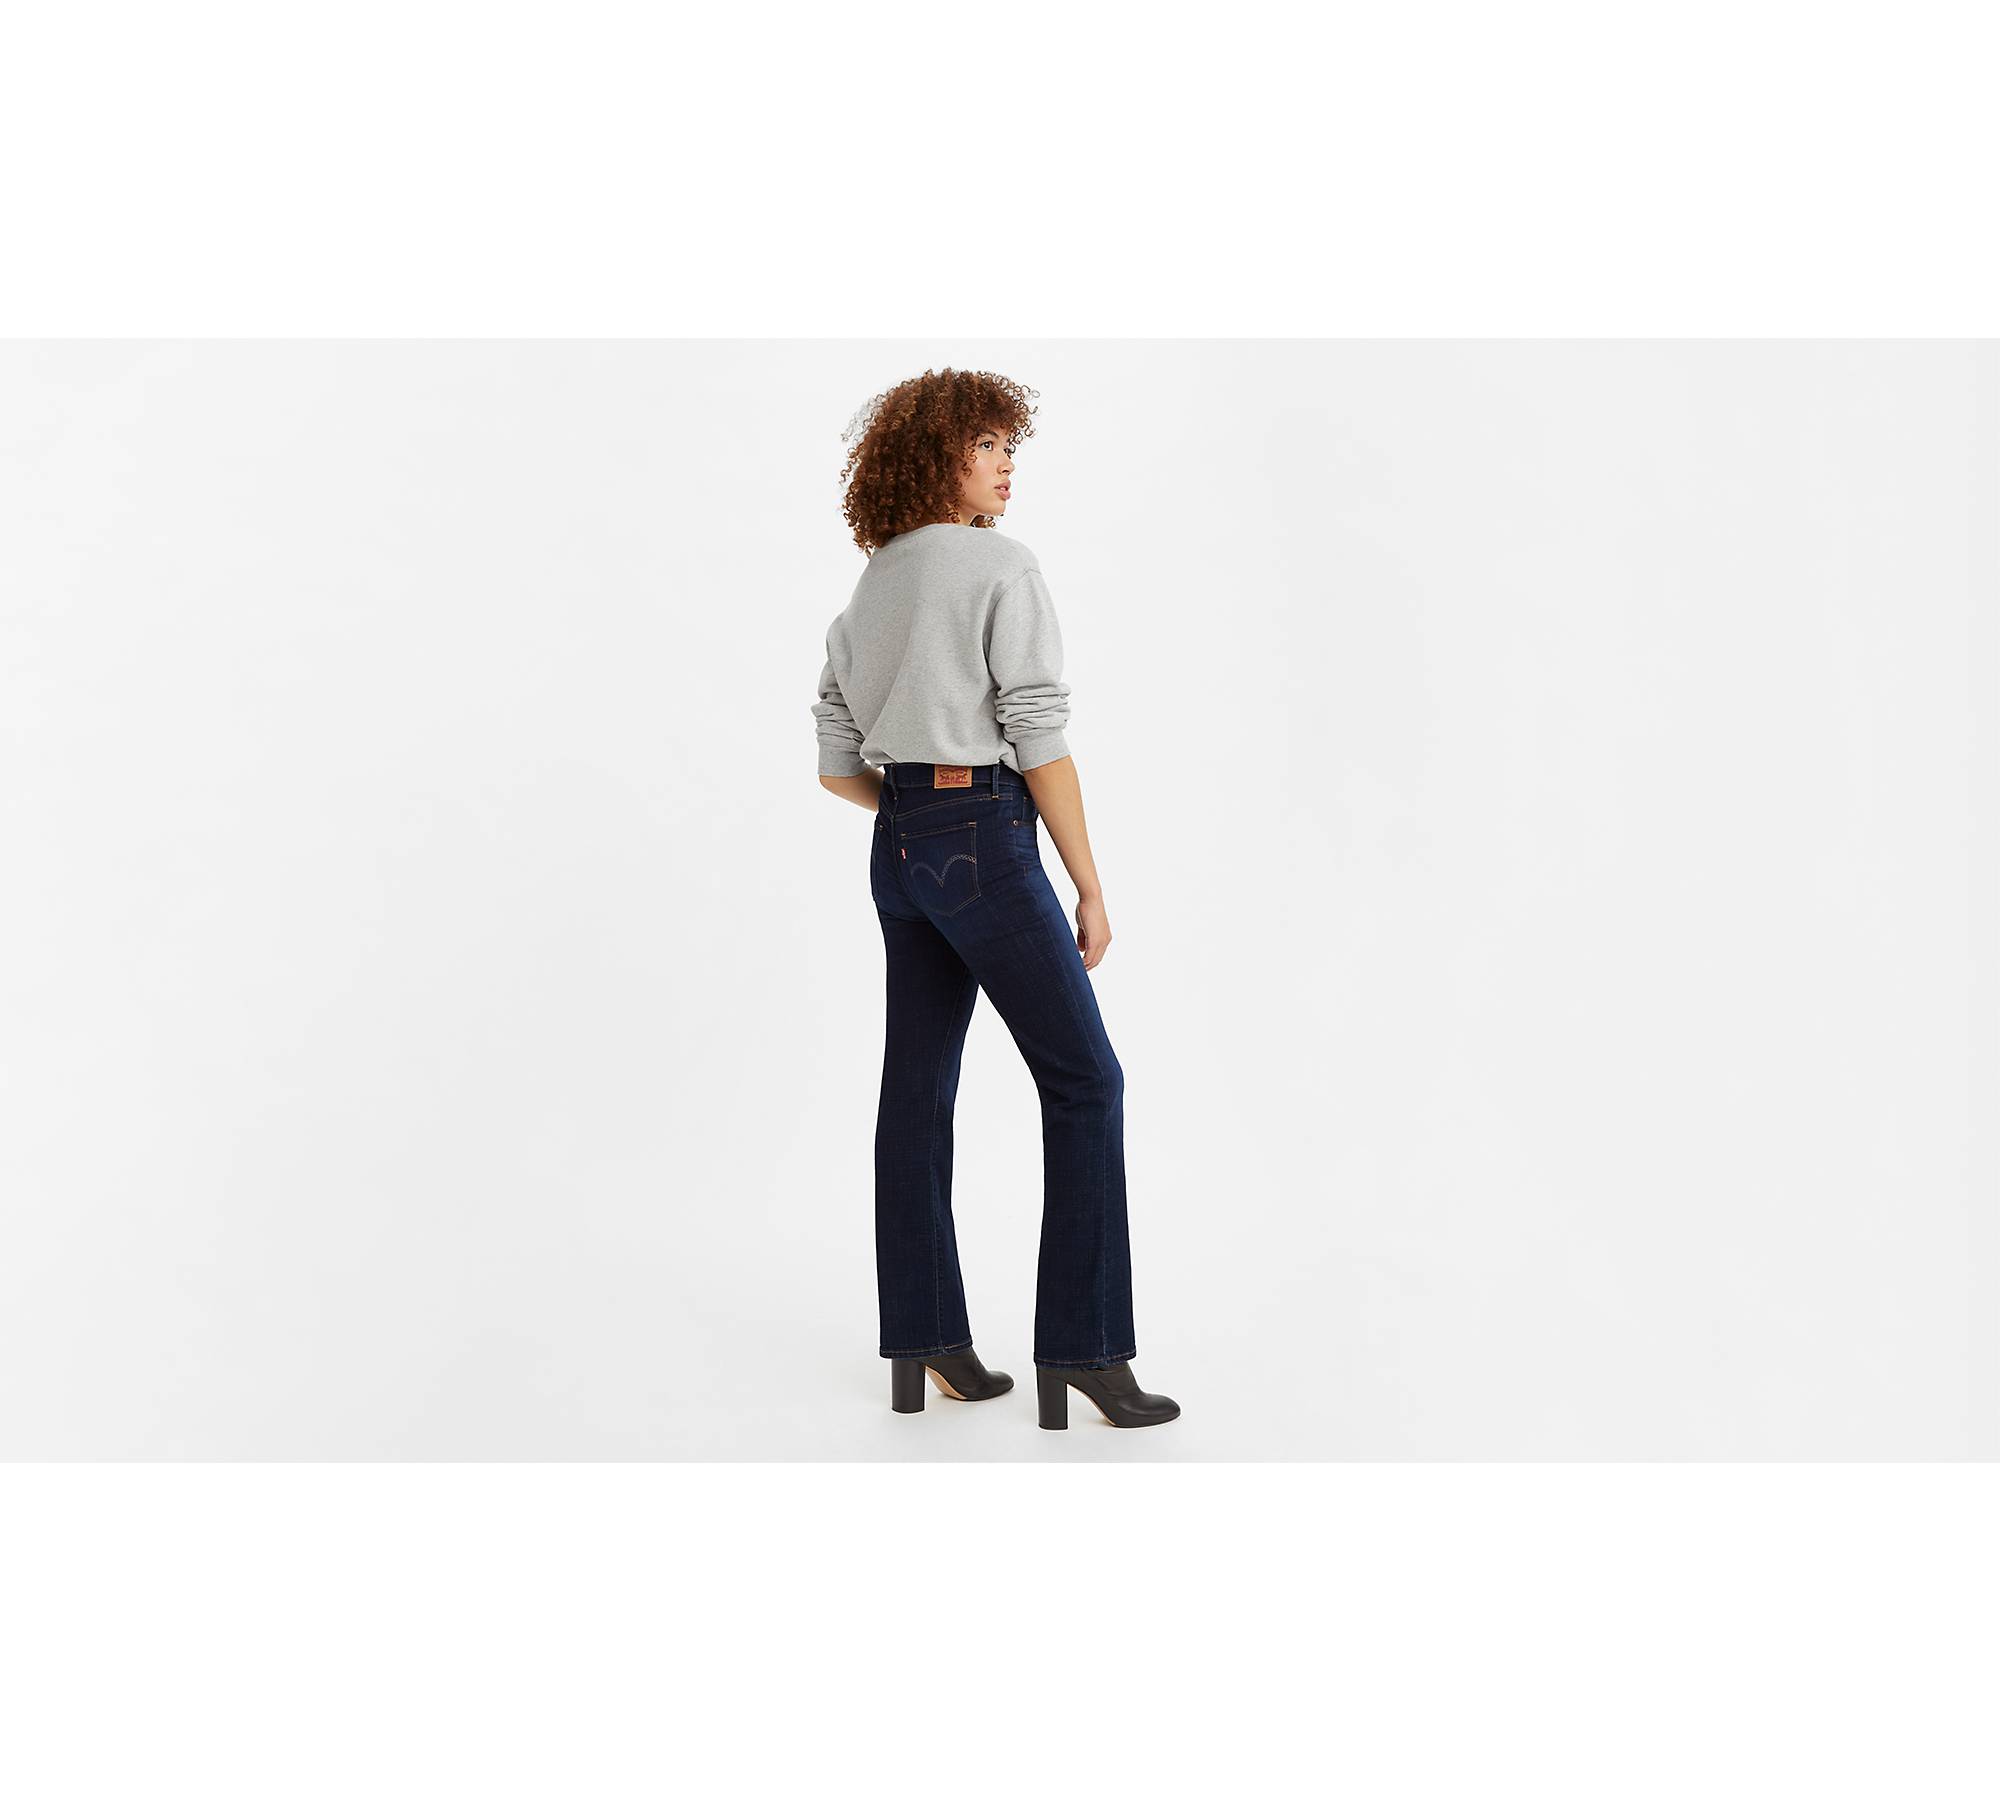 Tall Women's Jeans - Dark Wash Classic Fit Bootcut Tall Women's